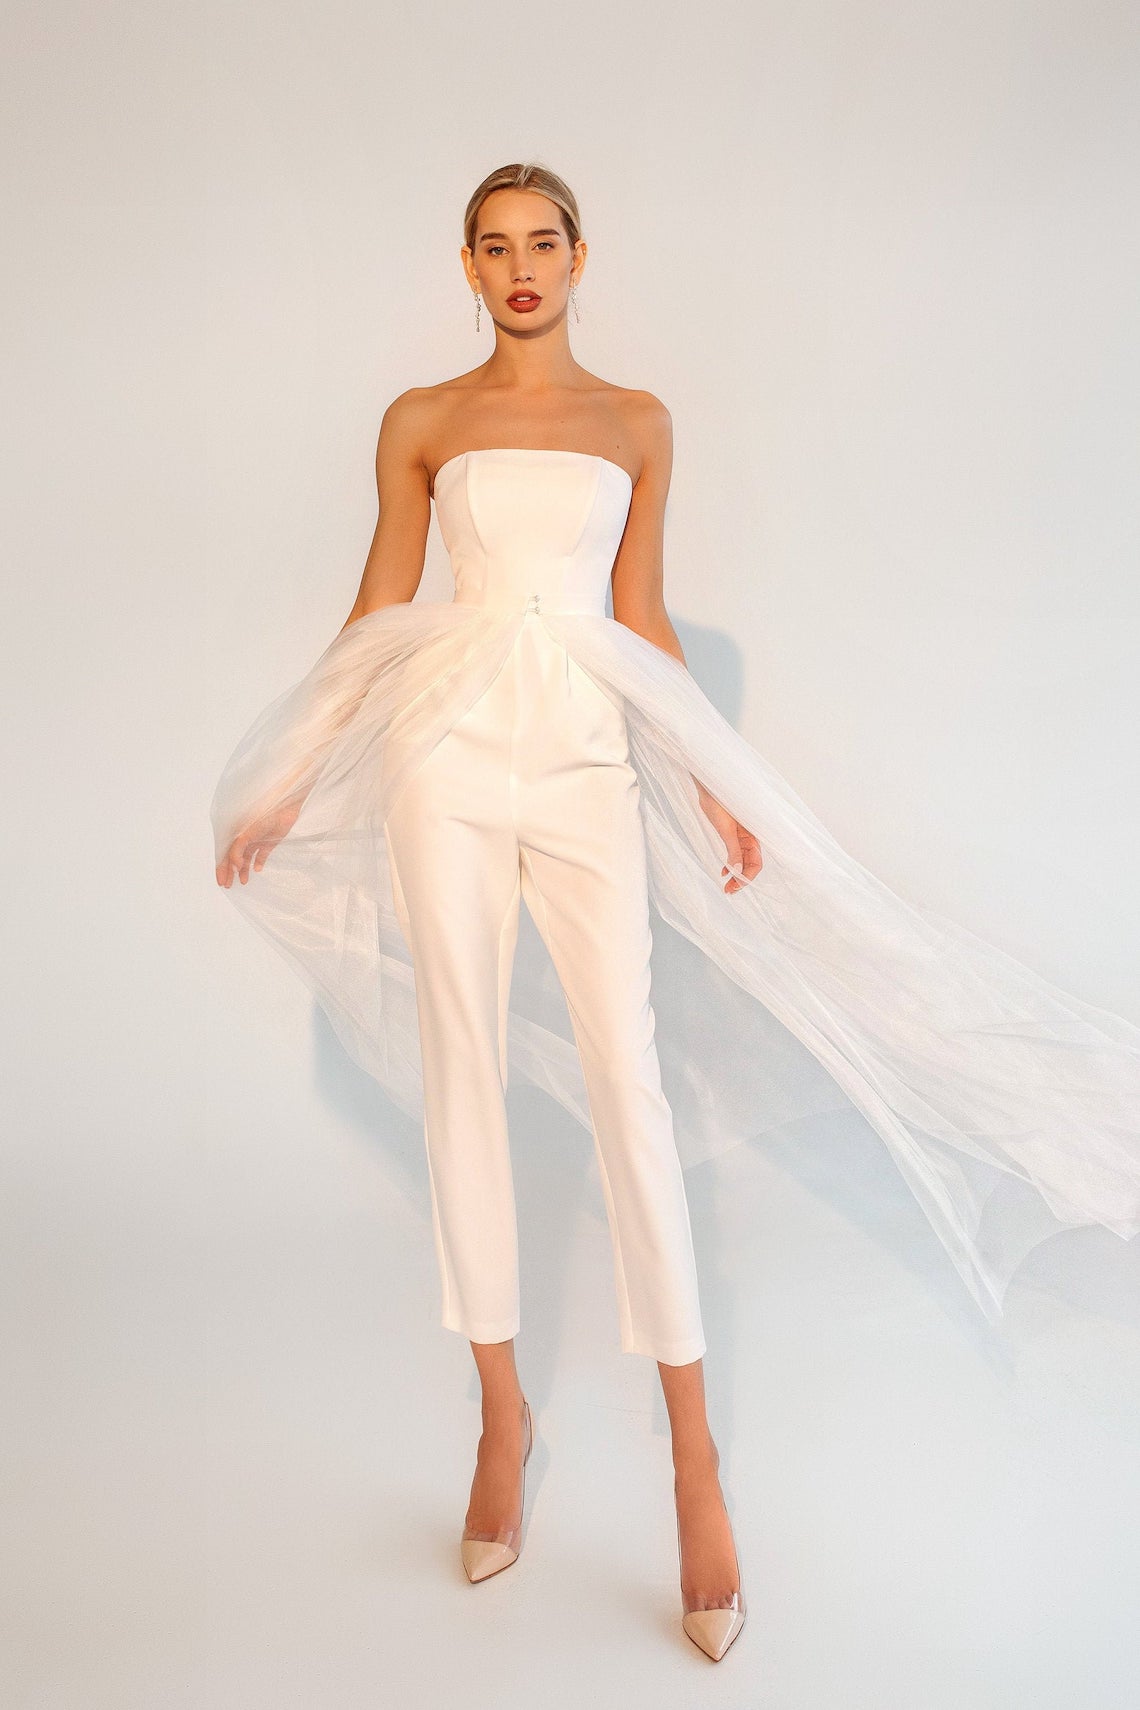 Tavifa Bridal Jumpsuit Bridal Jumpsuits Under 500 Bridal Musings - 24 bộ áo liền quần cô dâu sành điệu (Tất cả đều có giá dưới 500 đô la!)